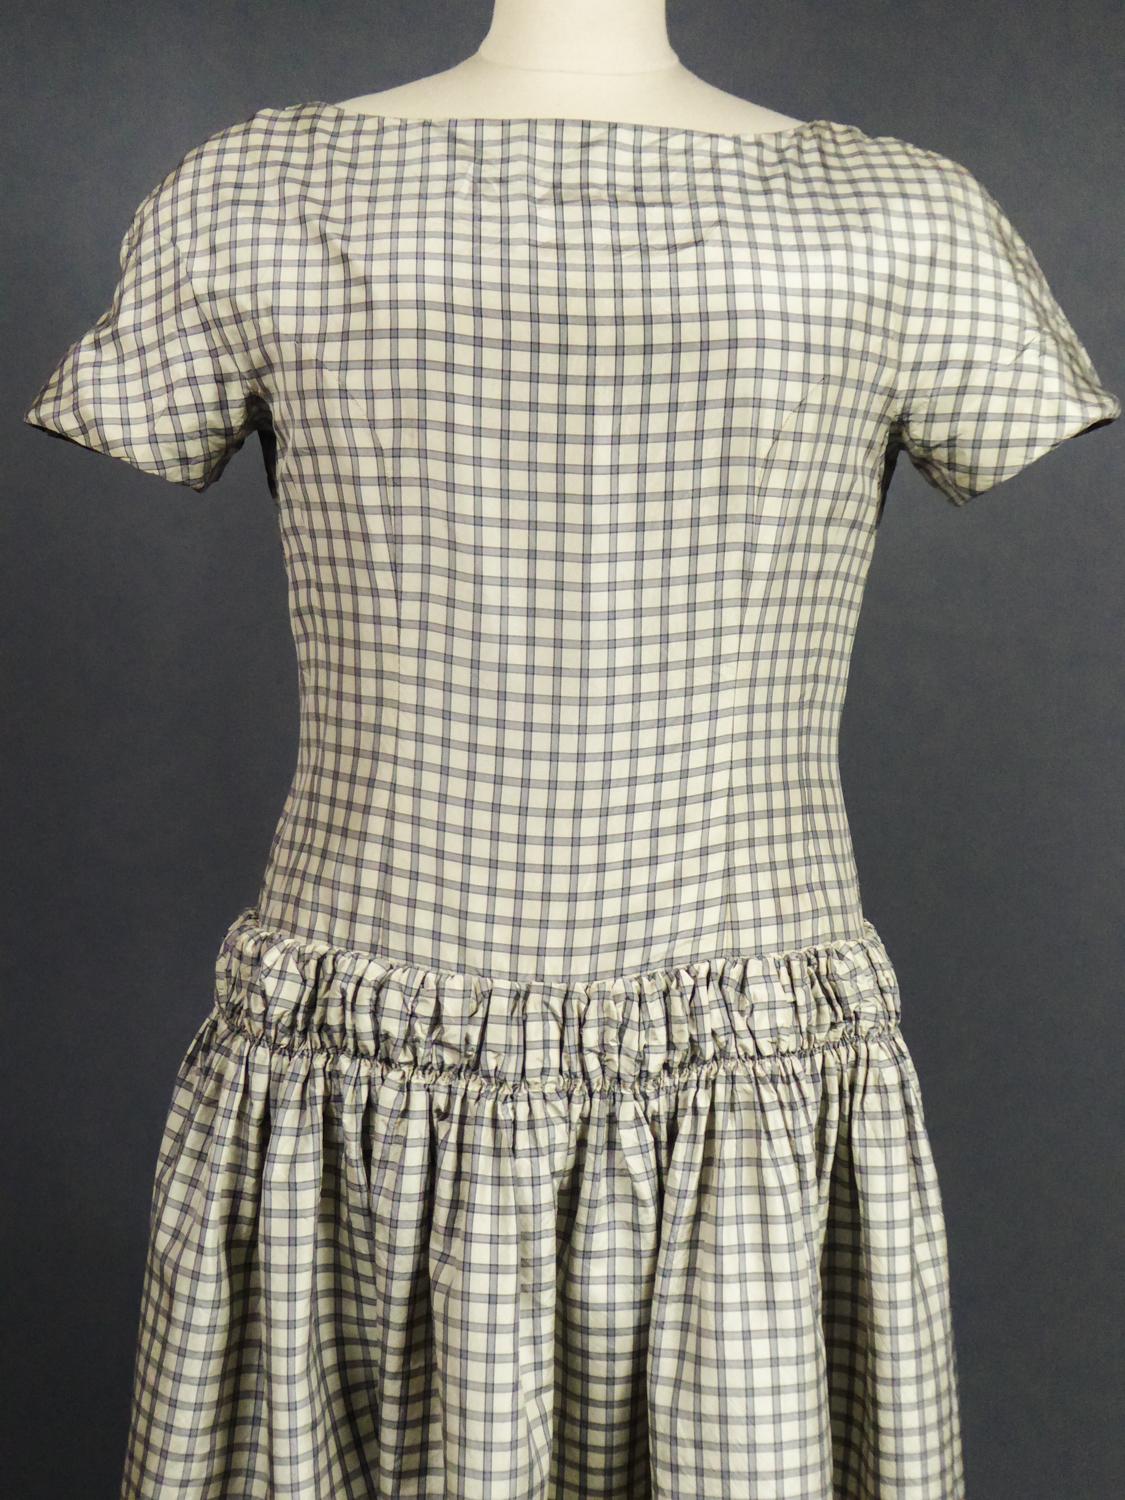 Gray A Cristobal Balenciaga Couture Sac Dress in Plaid Taffeta n°55418 Circa 1958